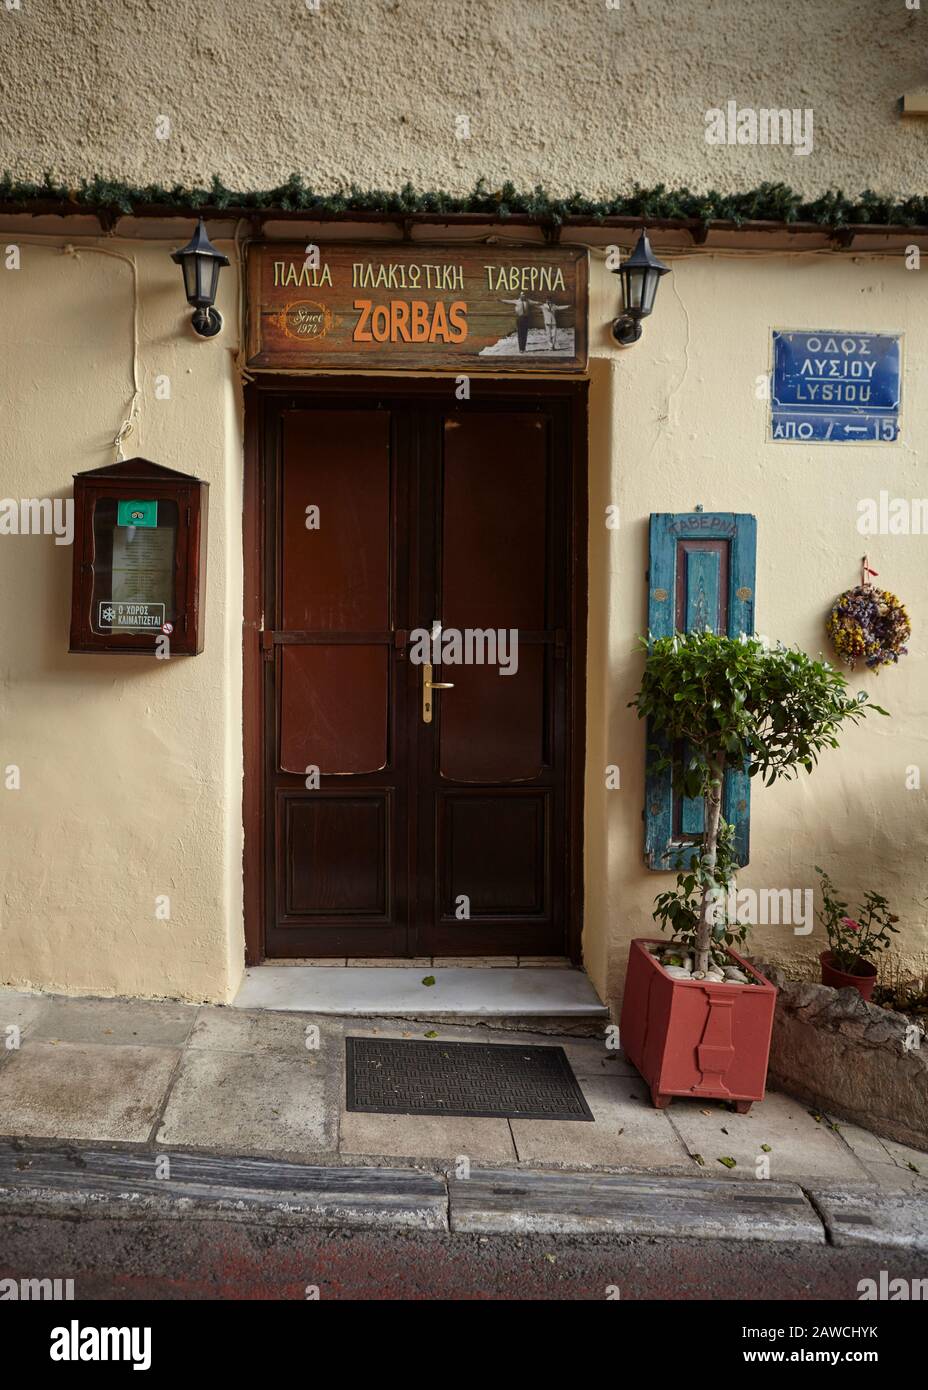 taverna zorbas at plaka athens greece Stock Photo